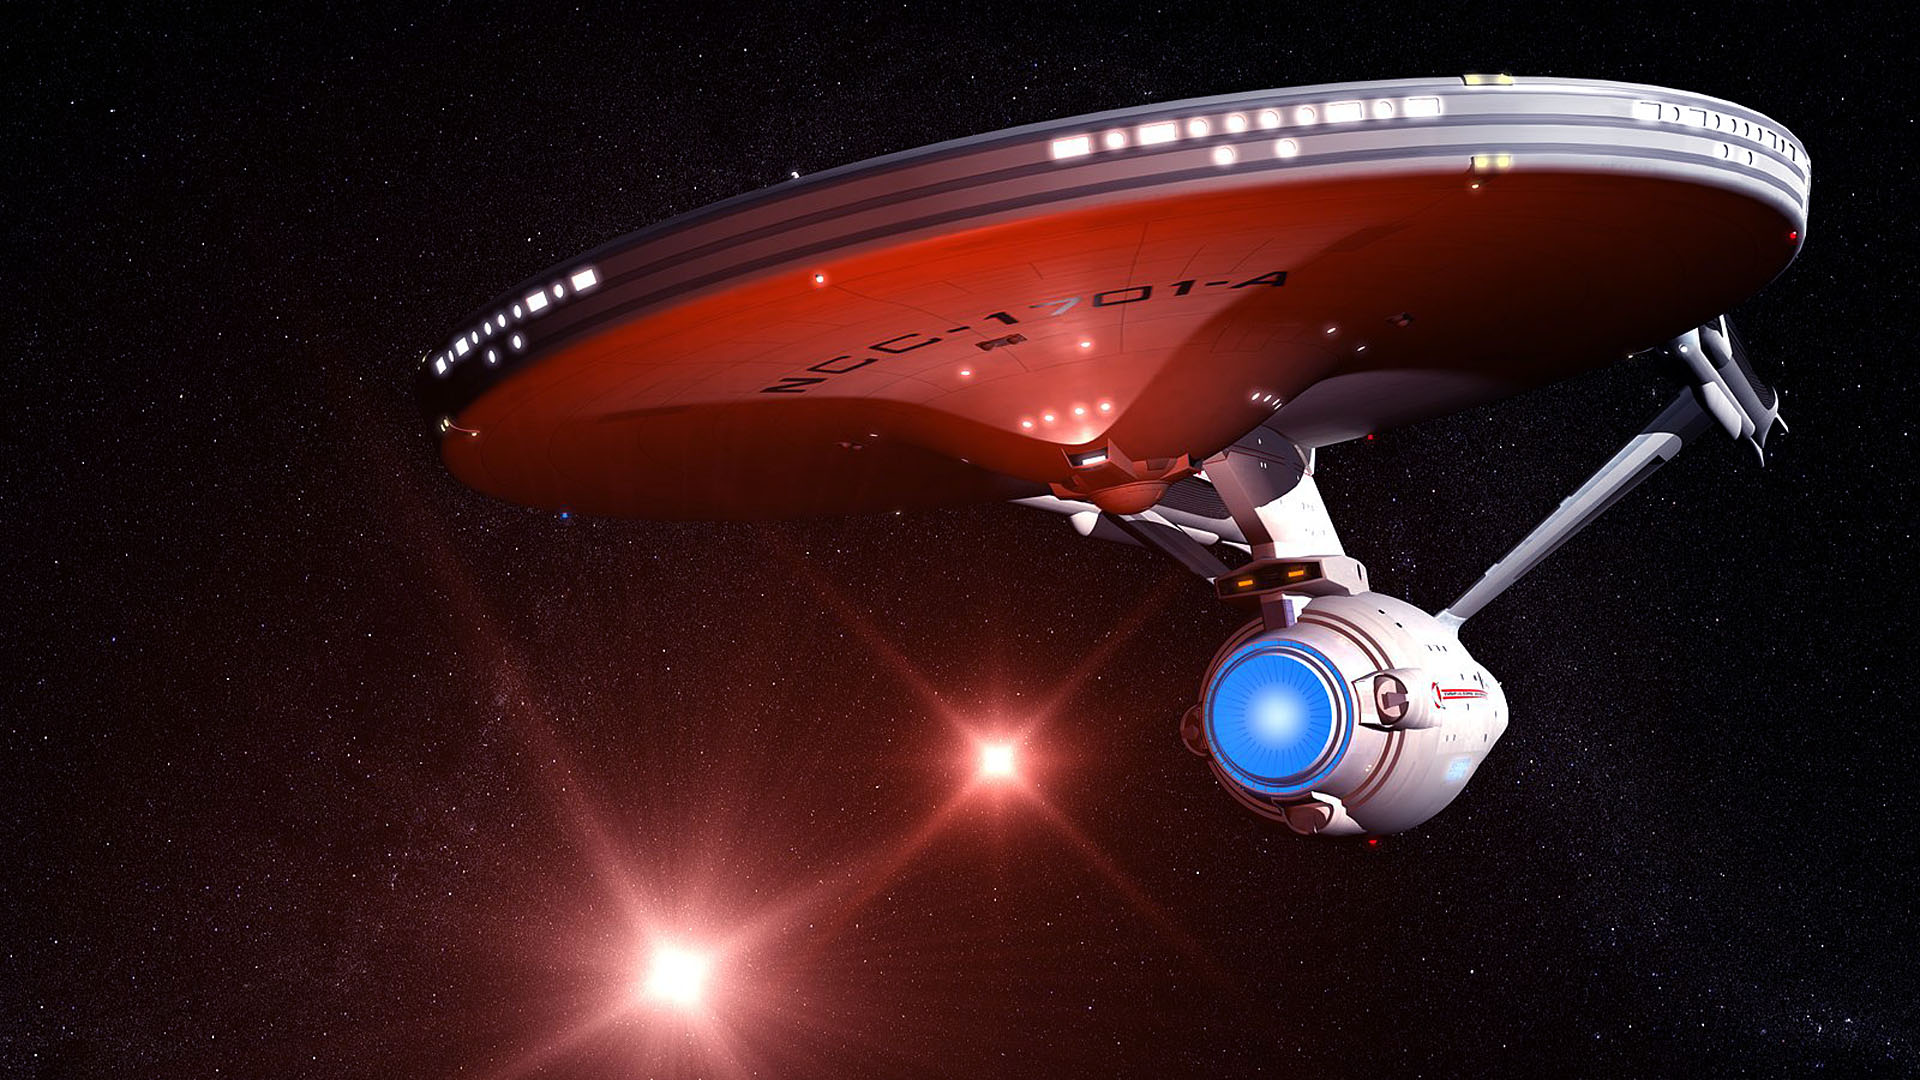 Star Trek Uss Enterprise Entrerprise Starship